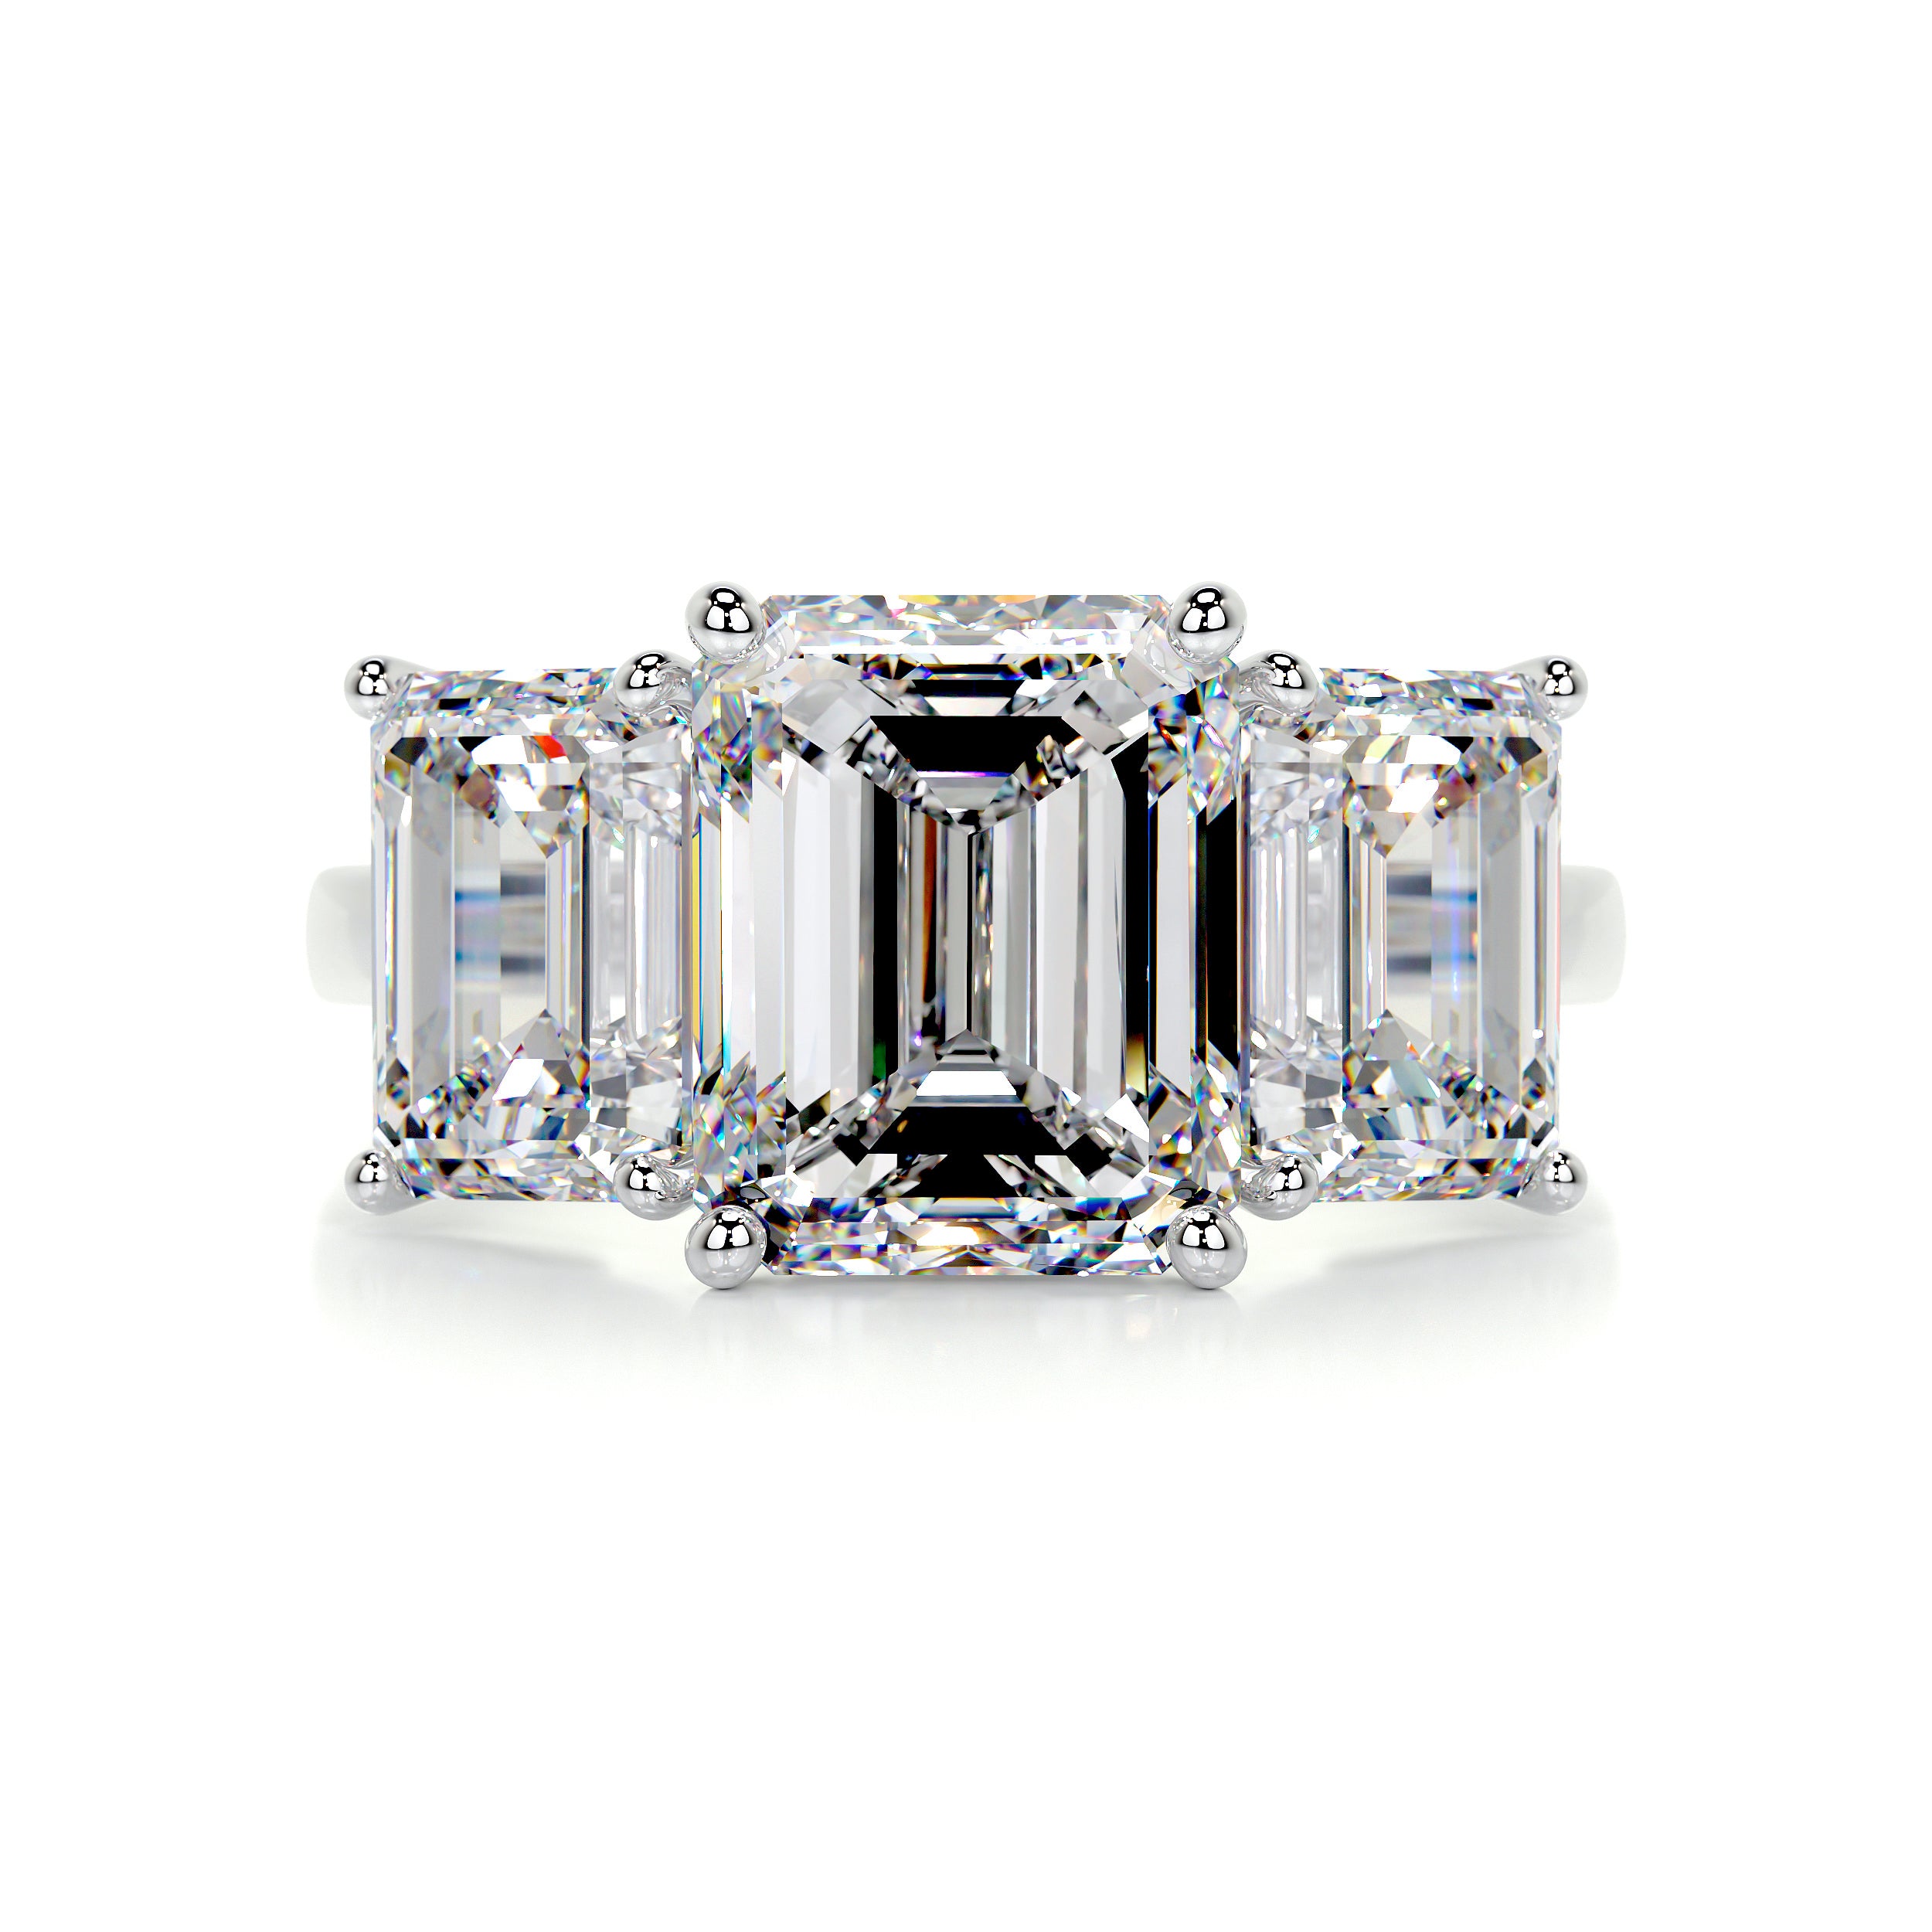 Amanda Diamond Engagement Ring   (4 Carat) -Platinum